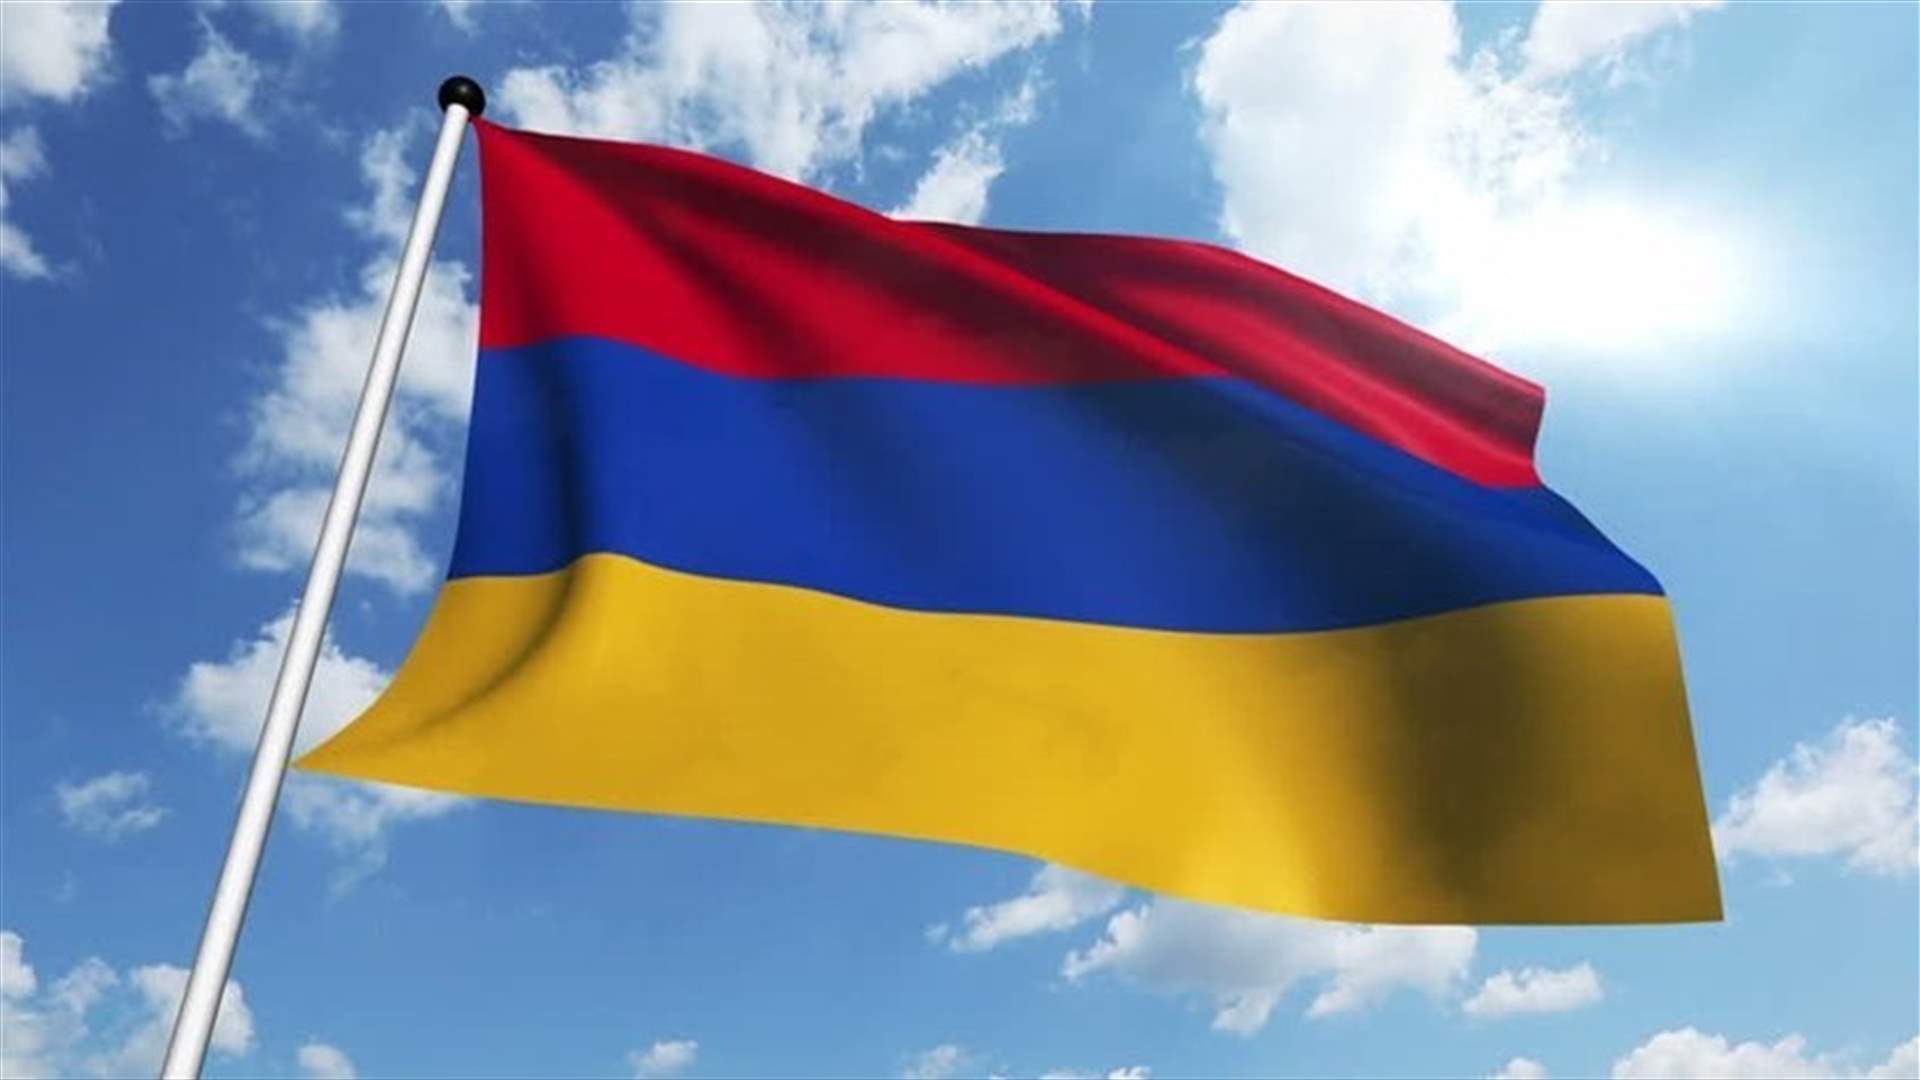 اعلان الاحكام العرفية والتعبئة العامة في ارمينيا بعد اشتباكات مع اذربيجان